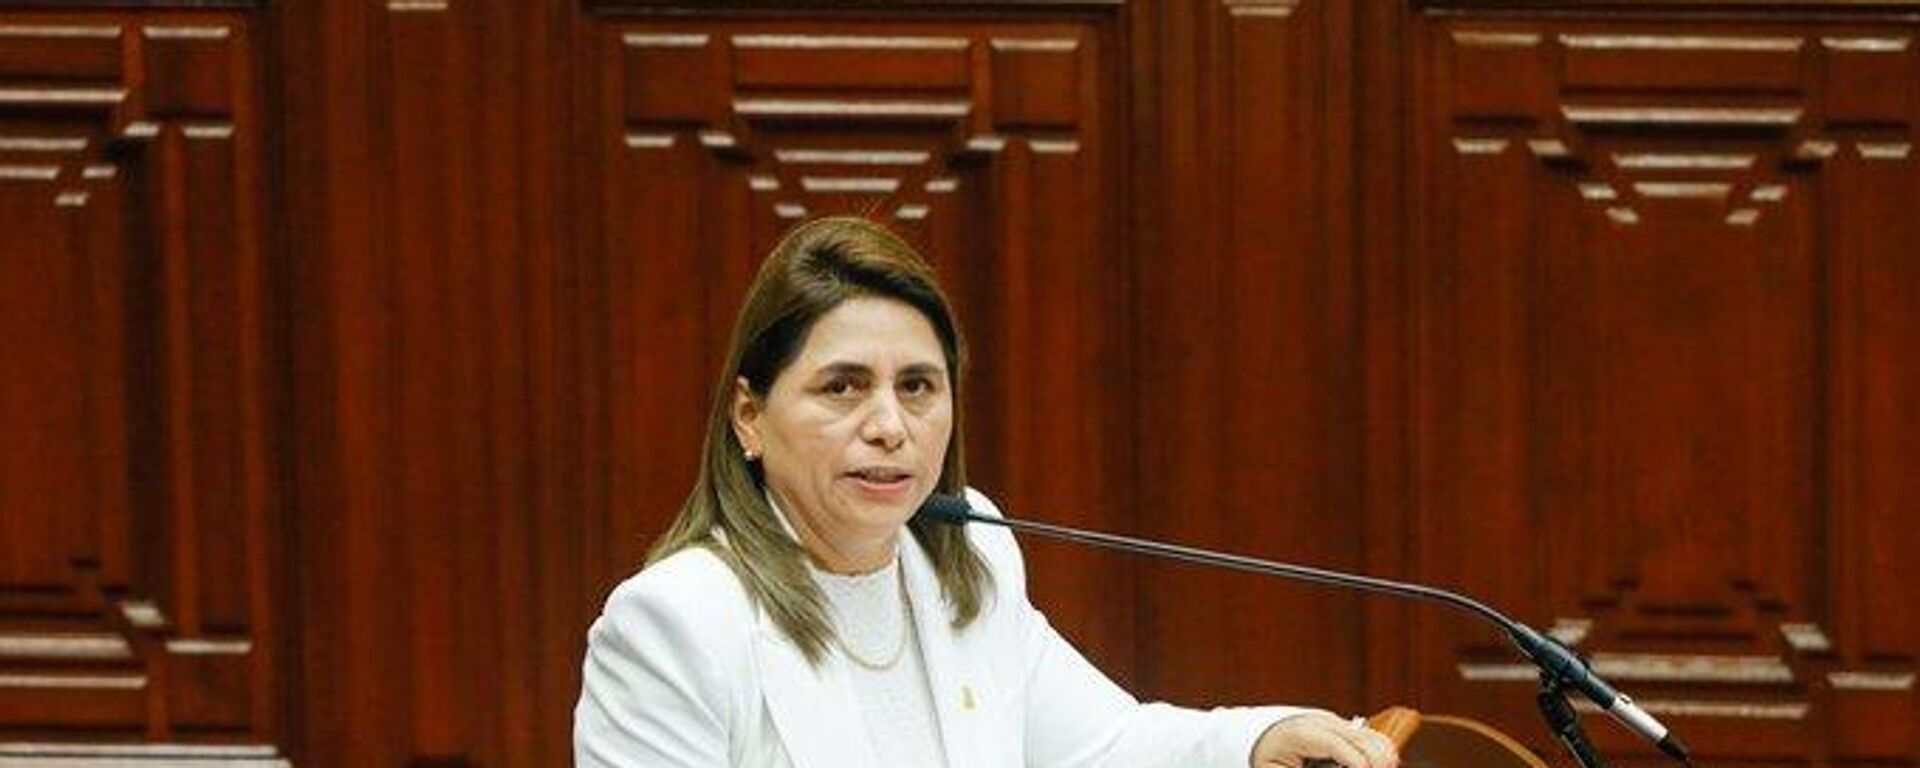 Rosa Gutiérrez presentó este jueves 15 de junio su renuncia como ministra de Salud de Perú. - Sputnik Mundo, 1920, 16.06.2023